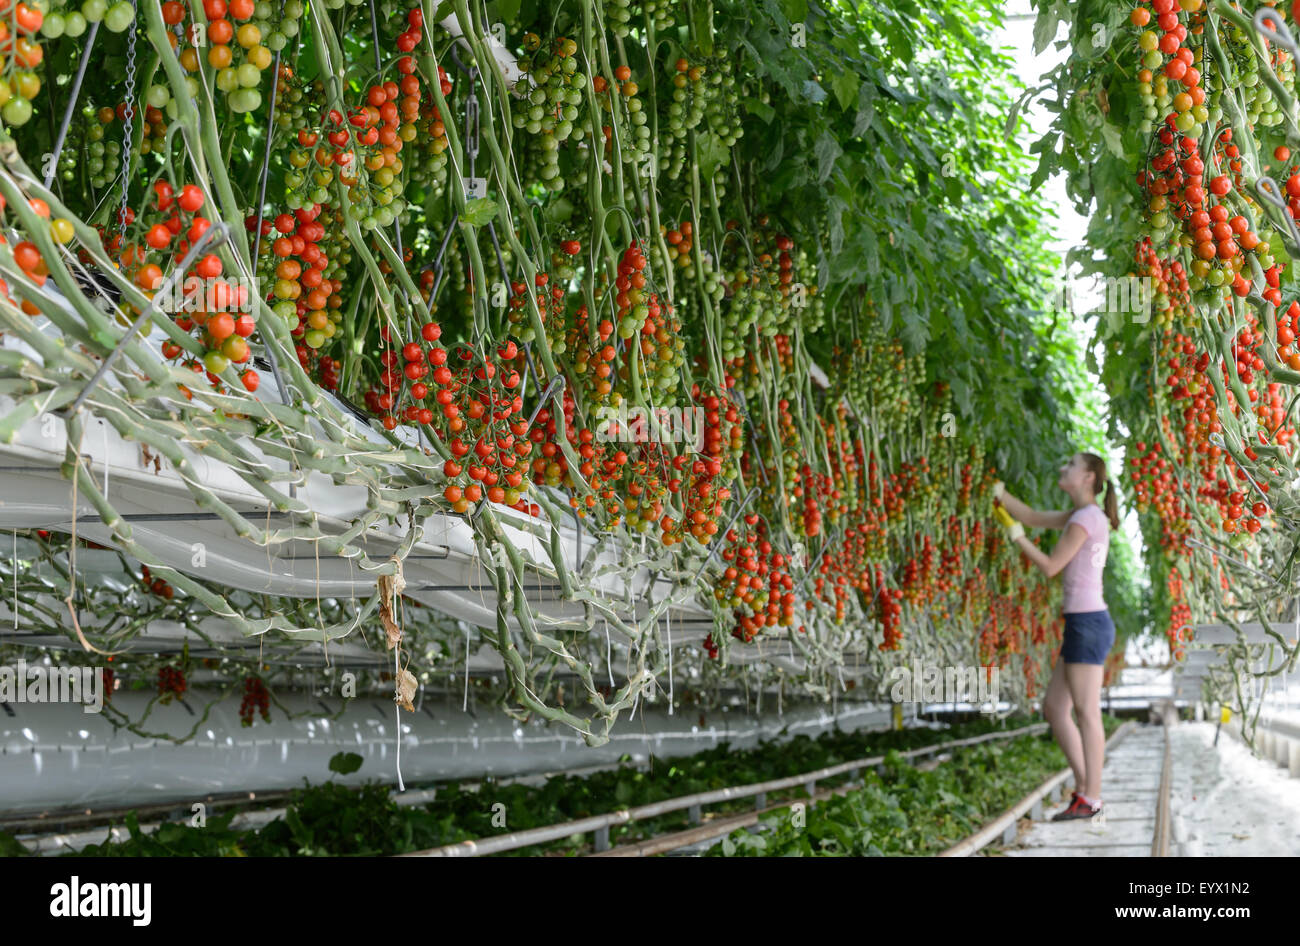 La Tomates cultivées dans d'immenses serres dans la campagne du Worcestershire. Les tomates sont cueillies et avaient tendance à par les travailleurs immigrés saisonniers Banque D'Images